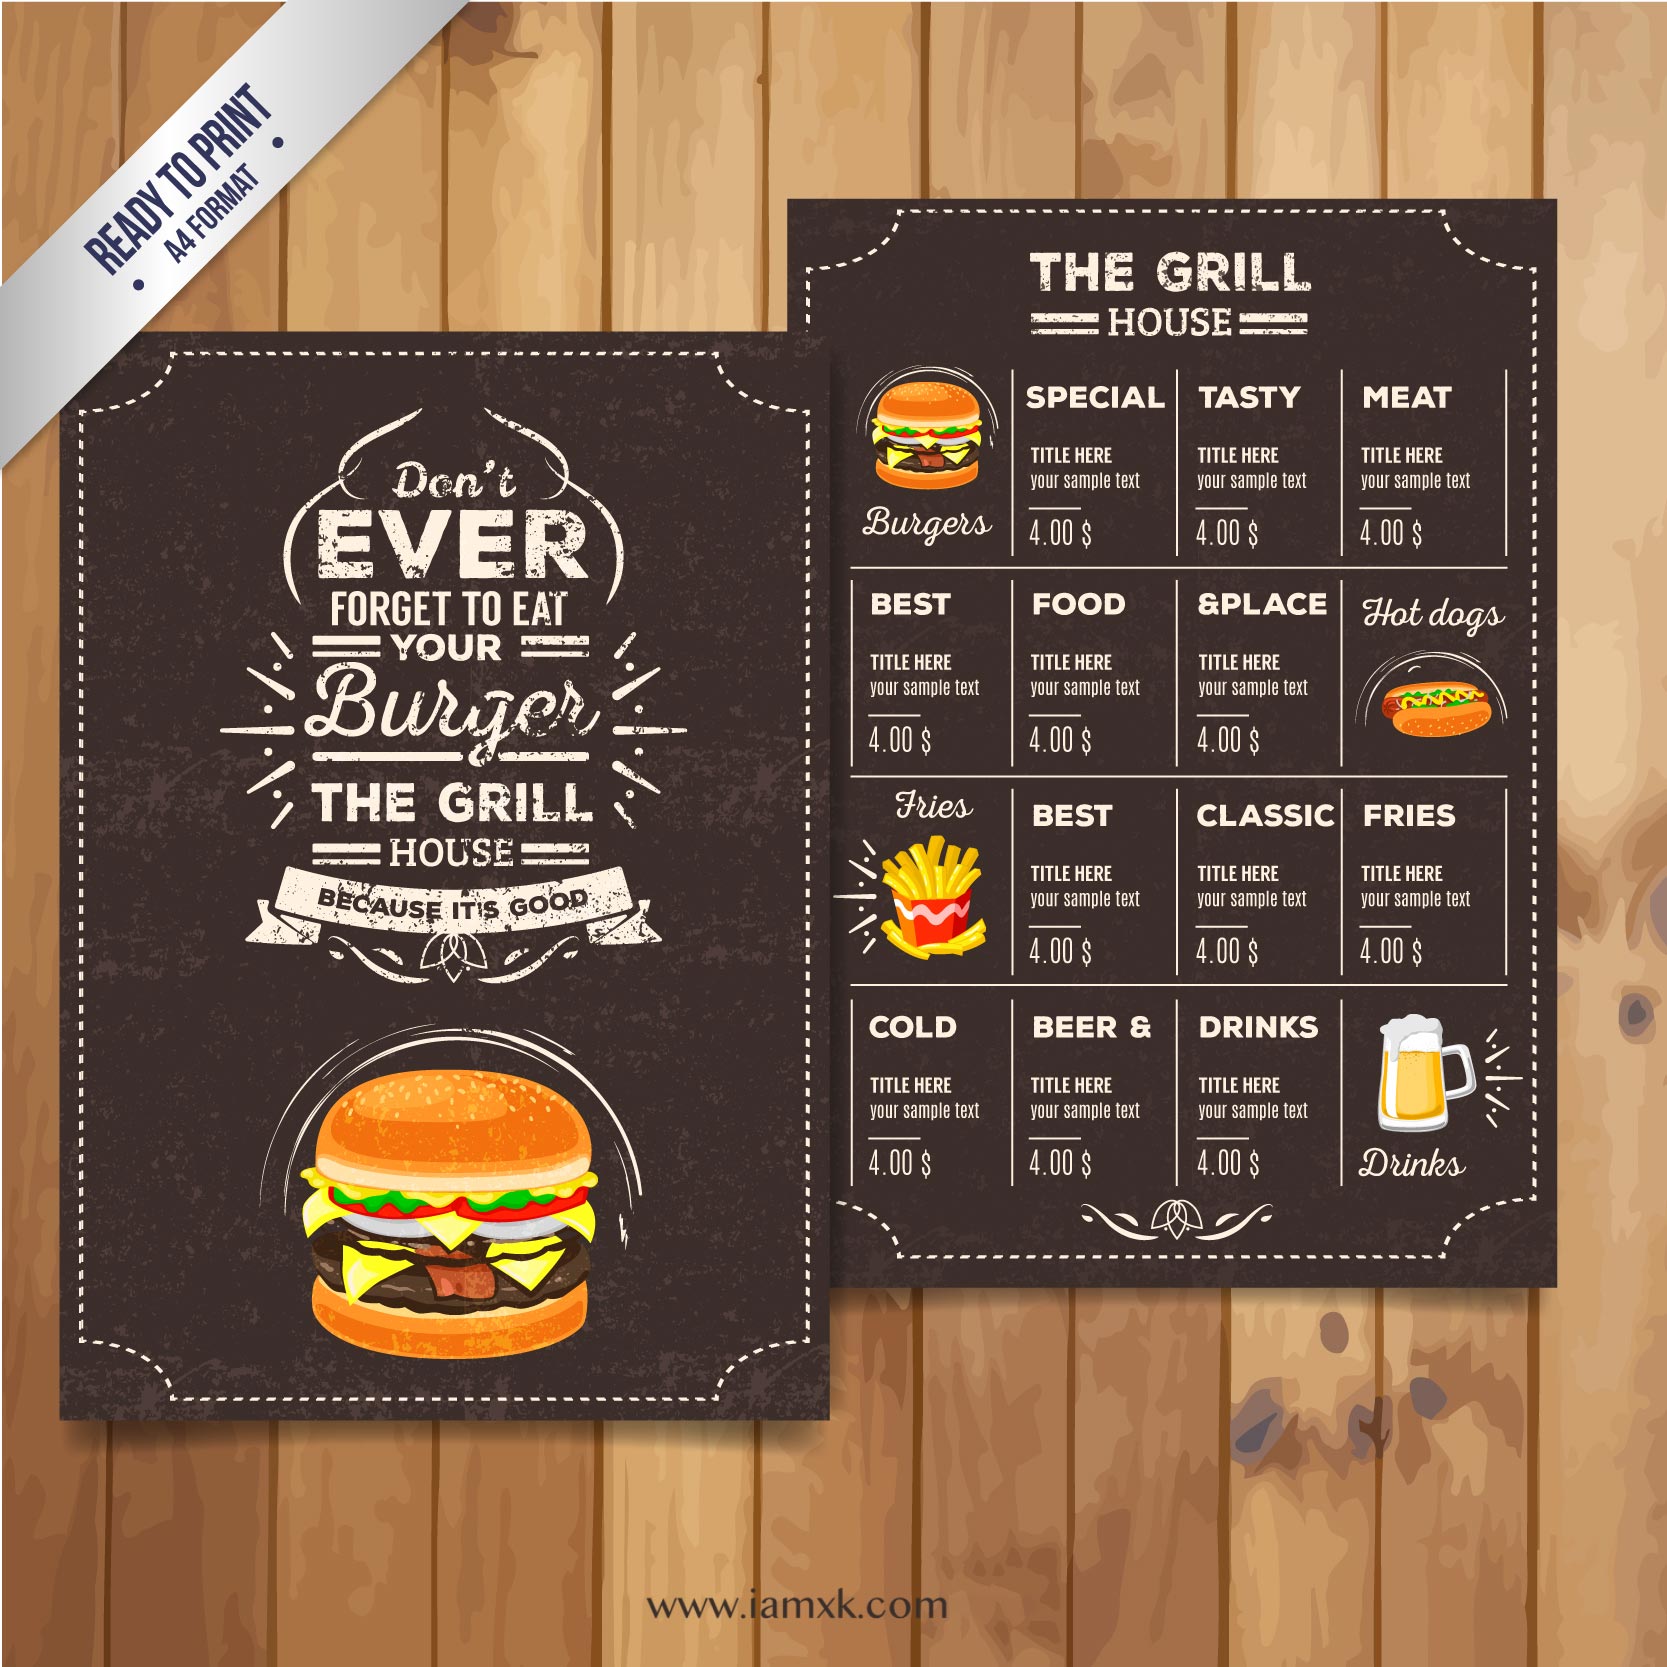 复古风格汉堡餐厅菜单设计 的Grill restaurant menu in retro style插图